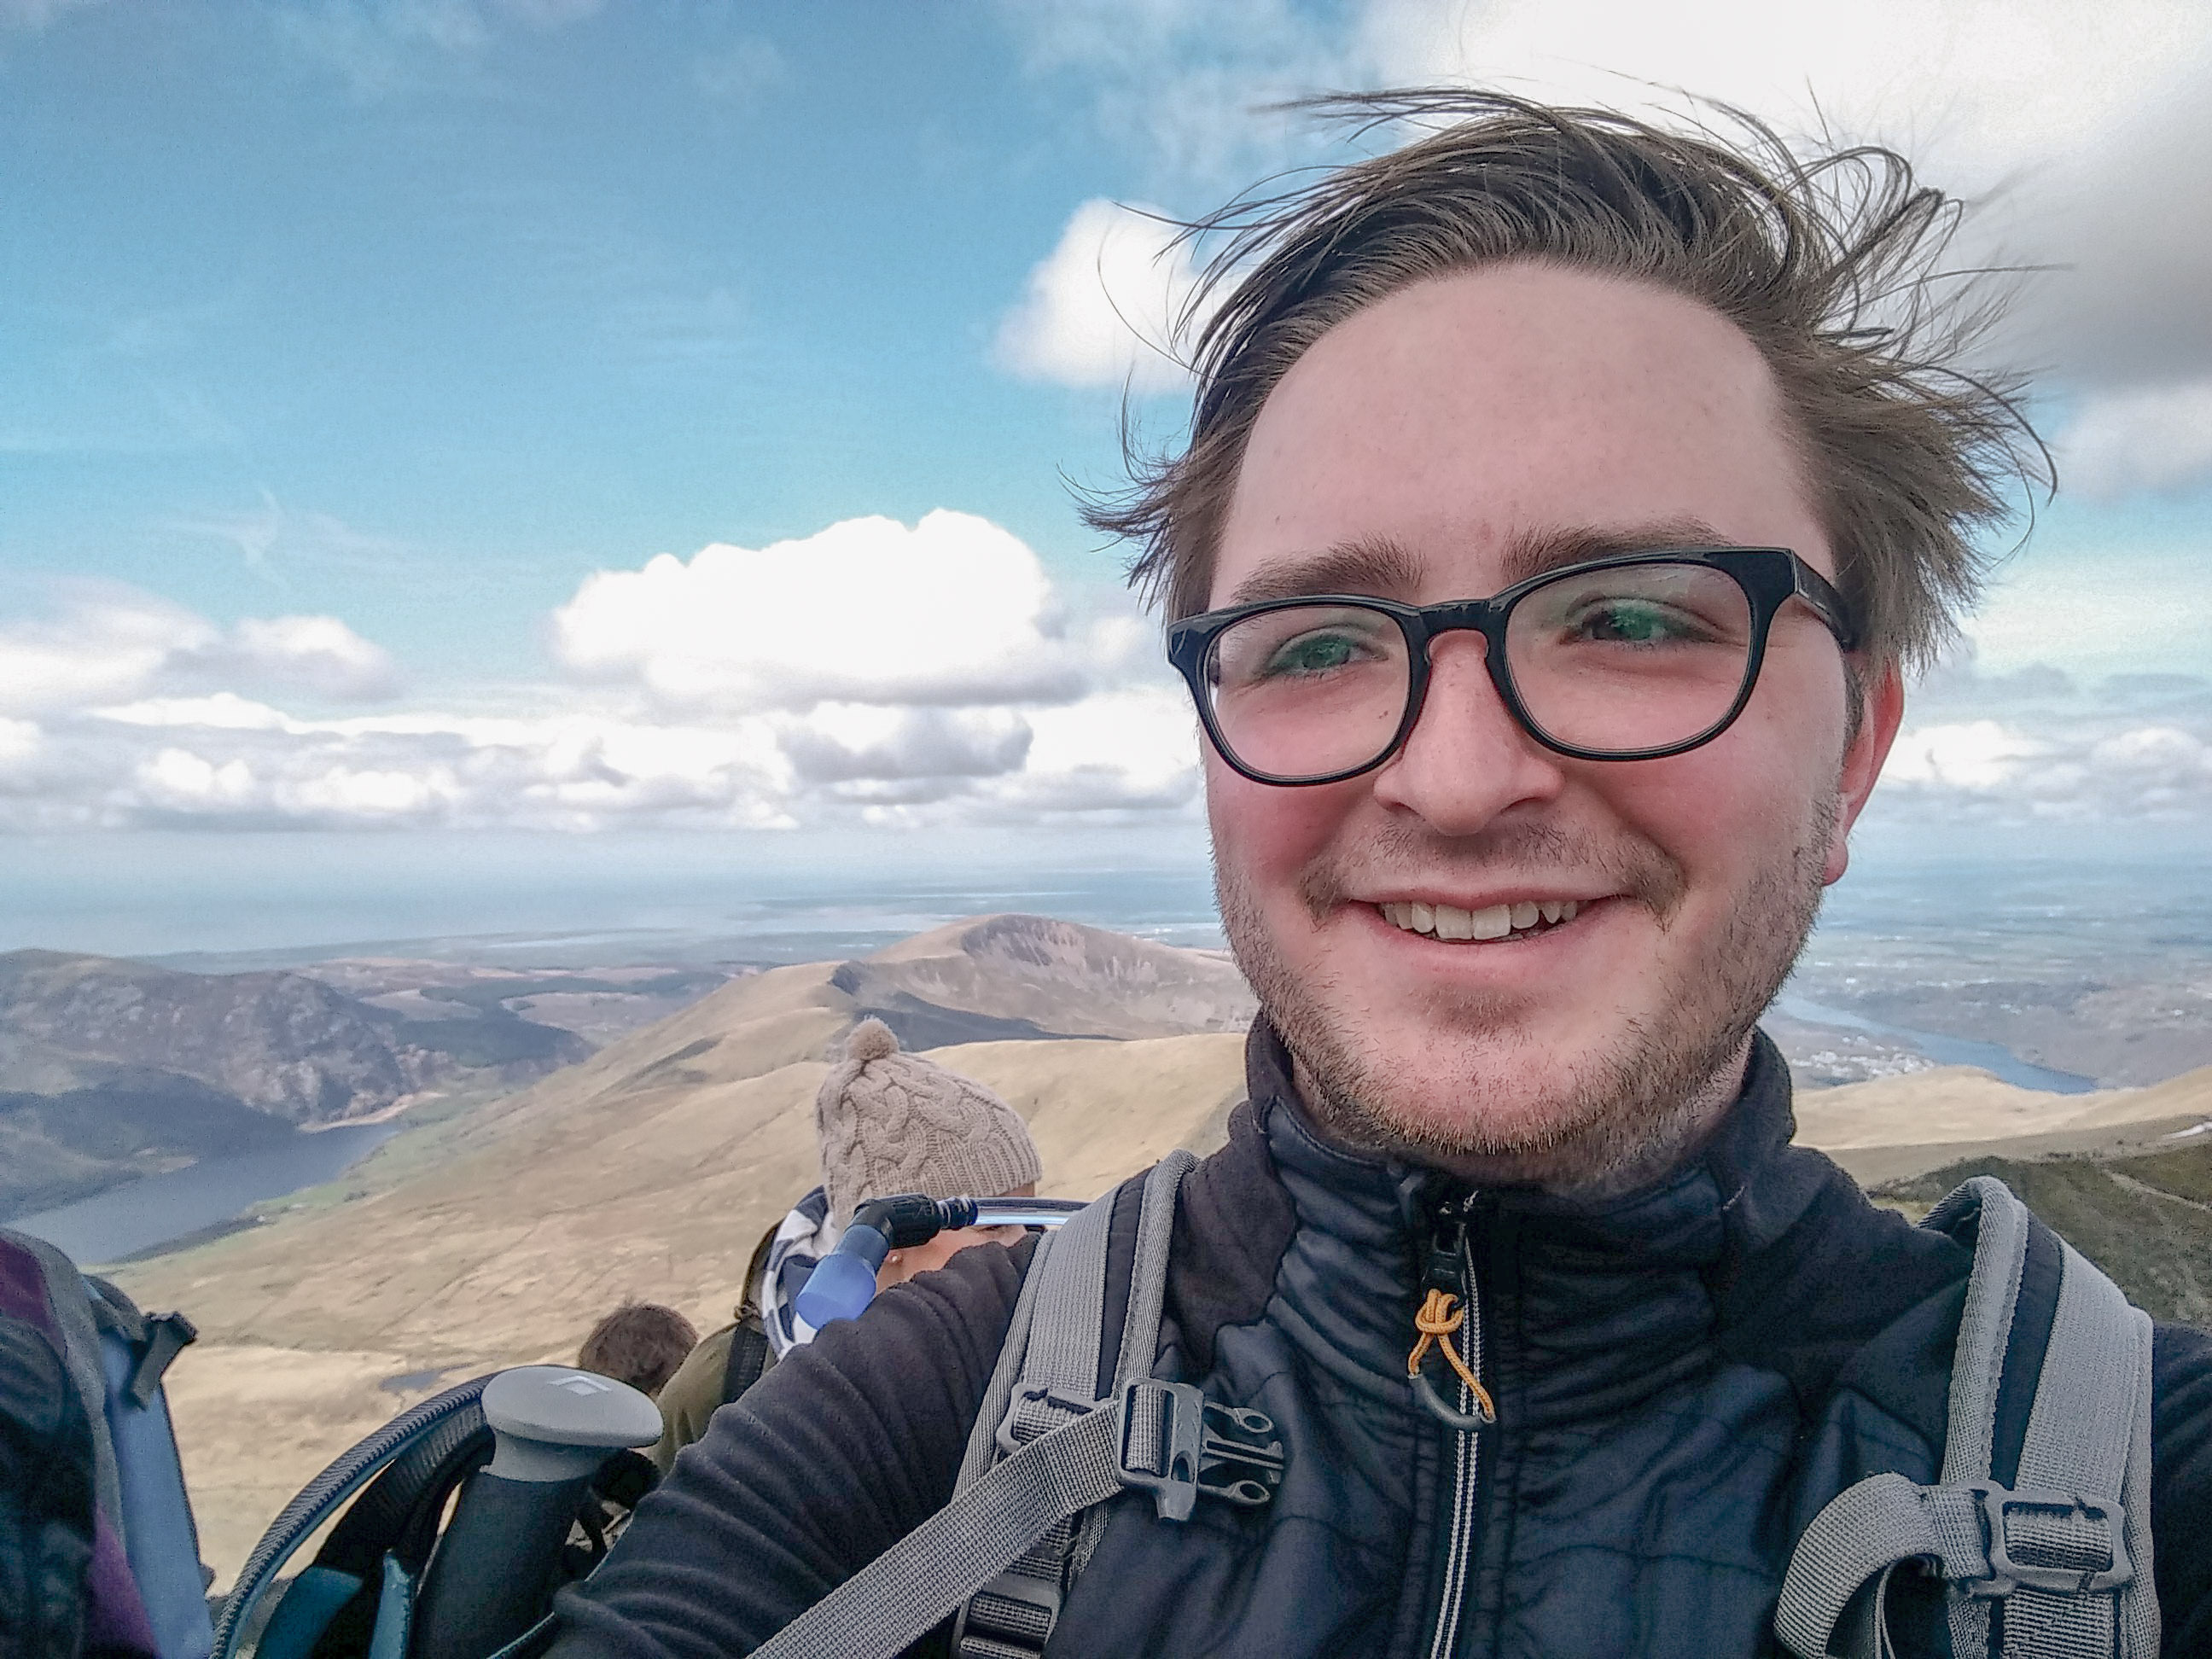 Horrendous mountaintop selfie